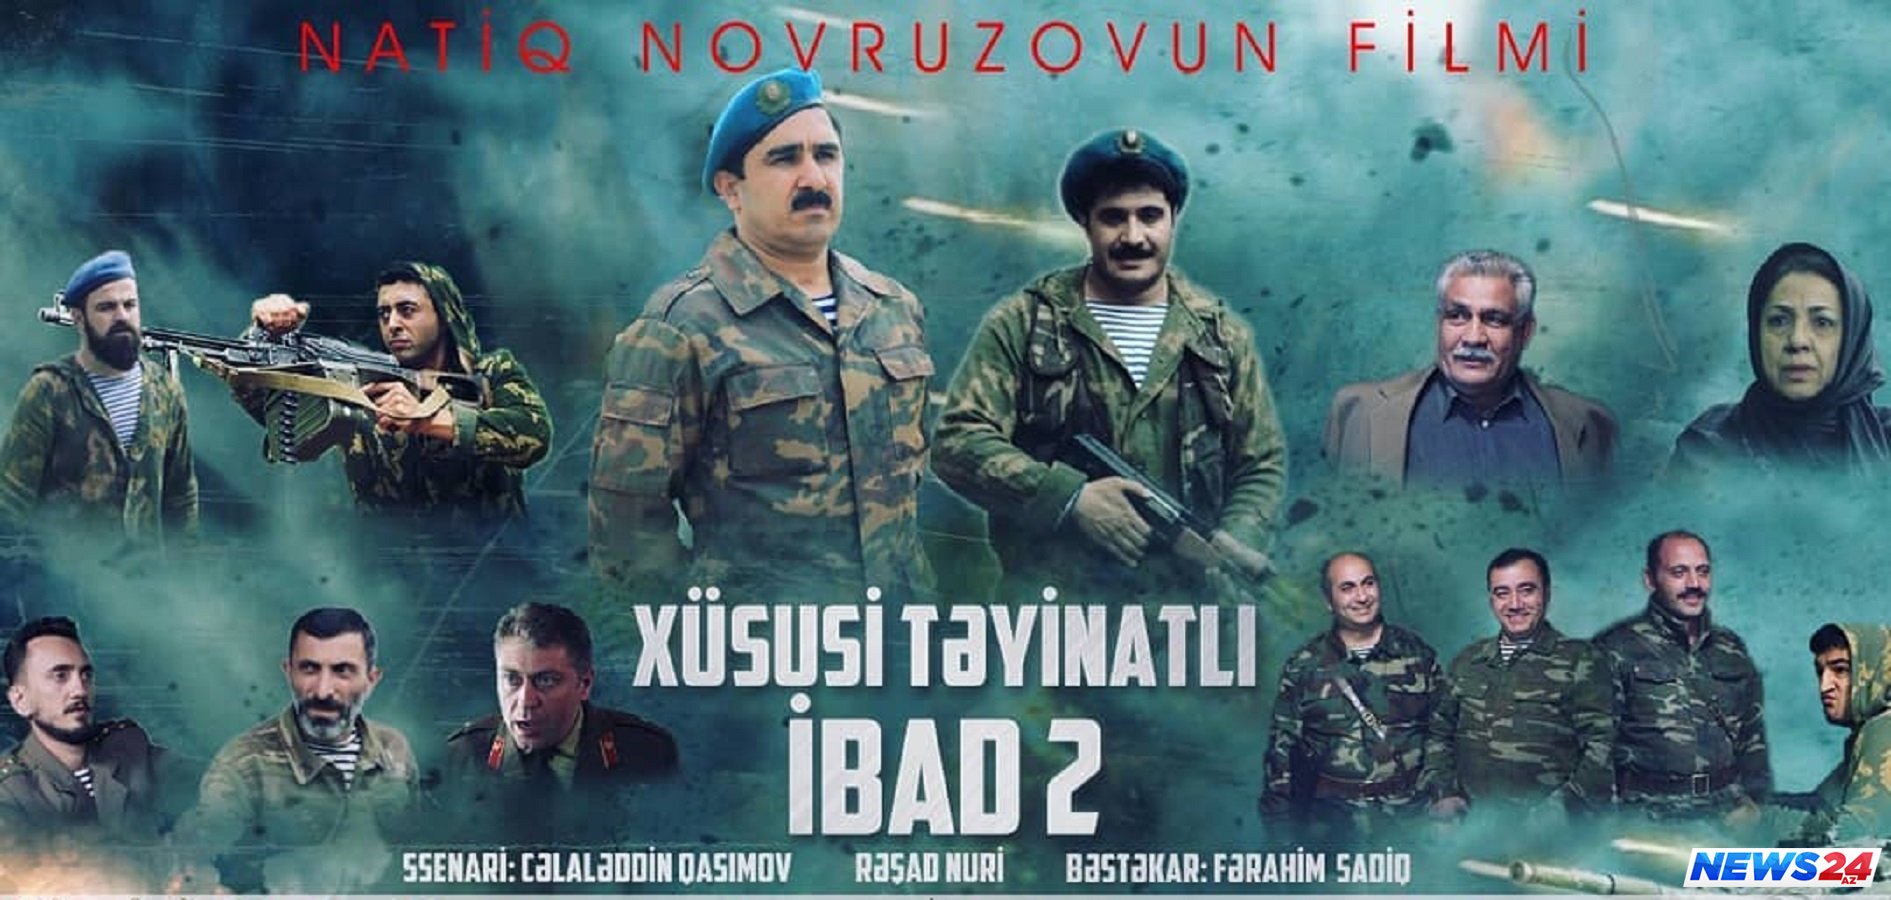 "Xüsusi təyinatlı İBAD 2" filminin təqdimatı oldu - FOTOLAR - VİDEO 